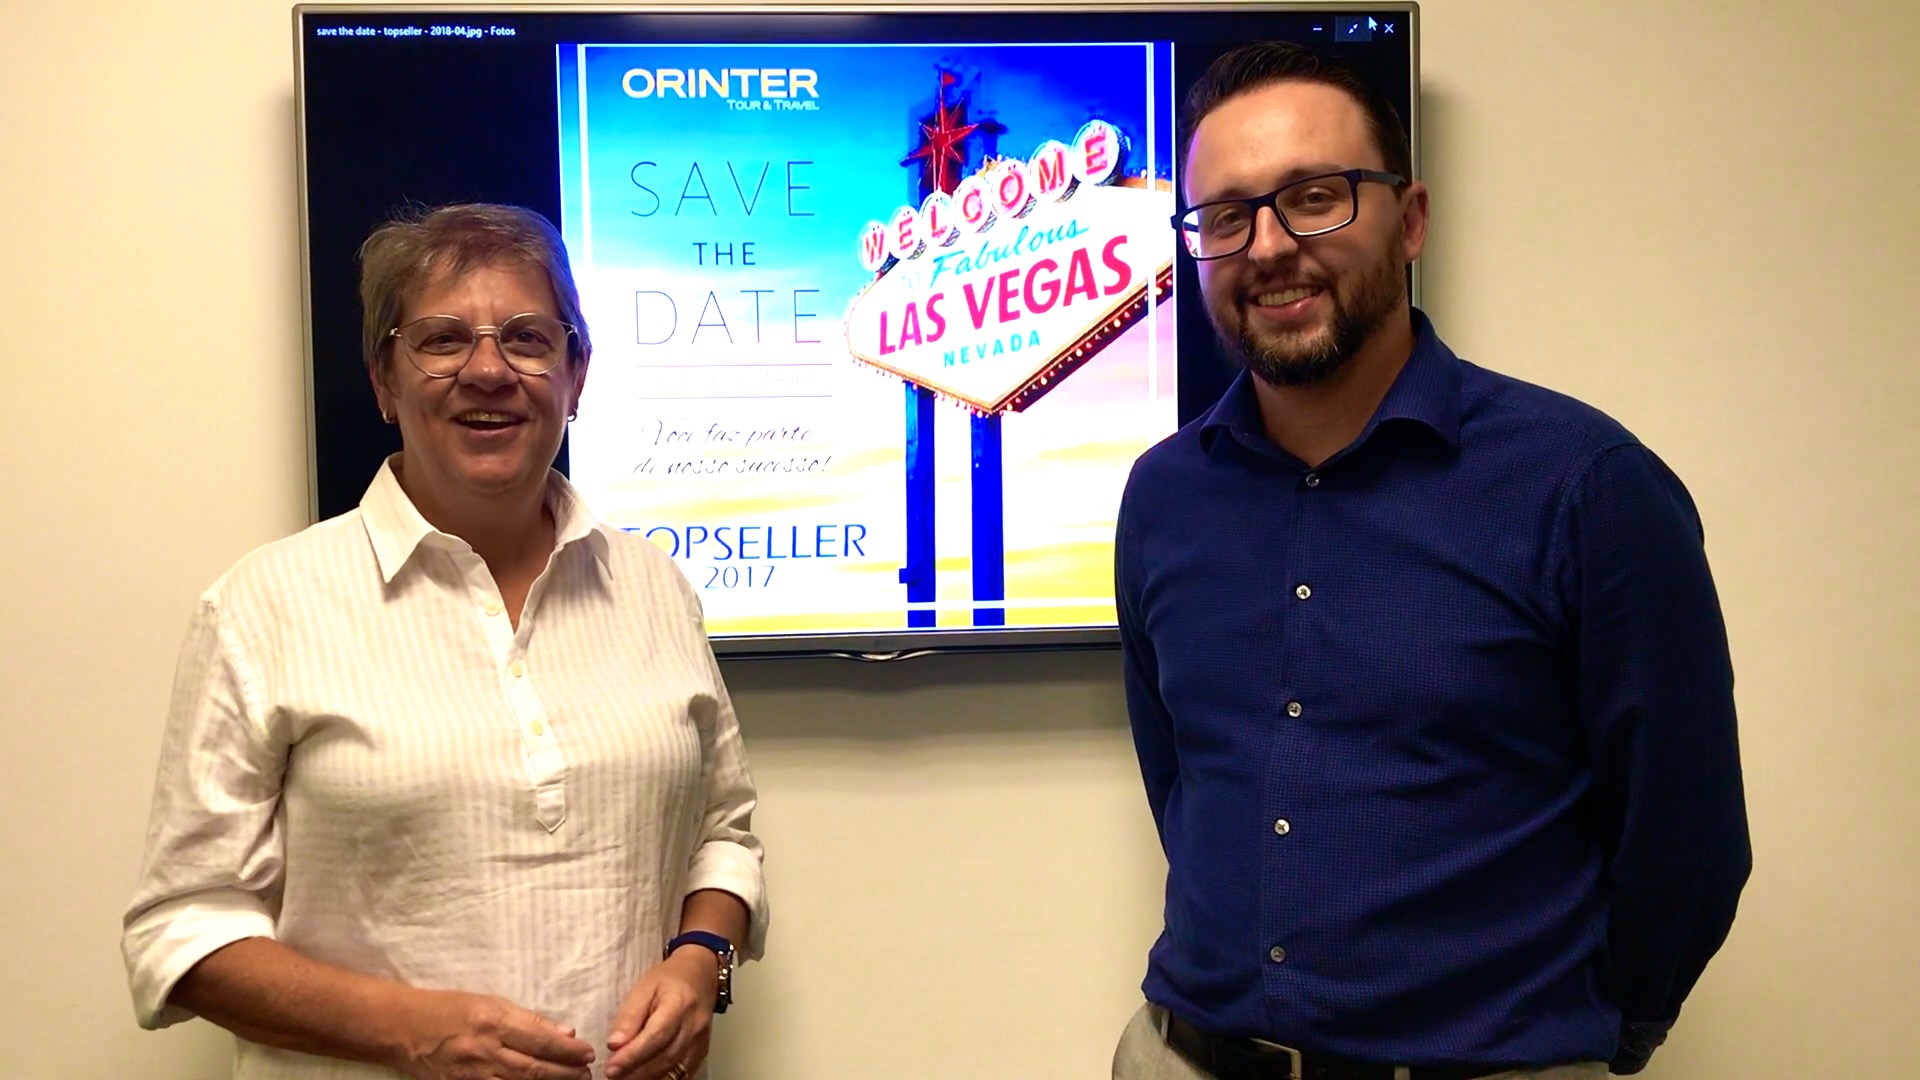 Ana Maria Berto e Roberto Sanches, diretores da Orinter Tour & Travel, convidam para o TopSeller 2017